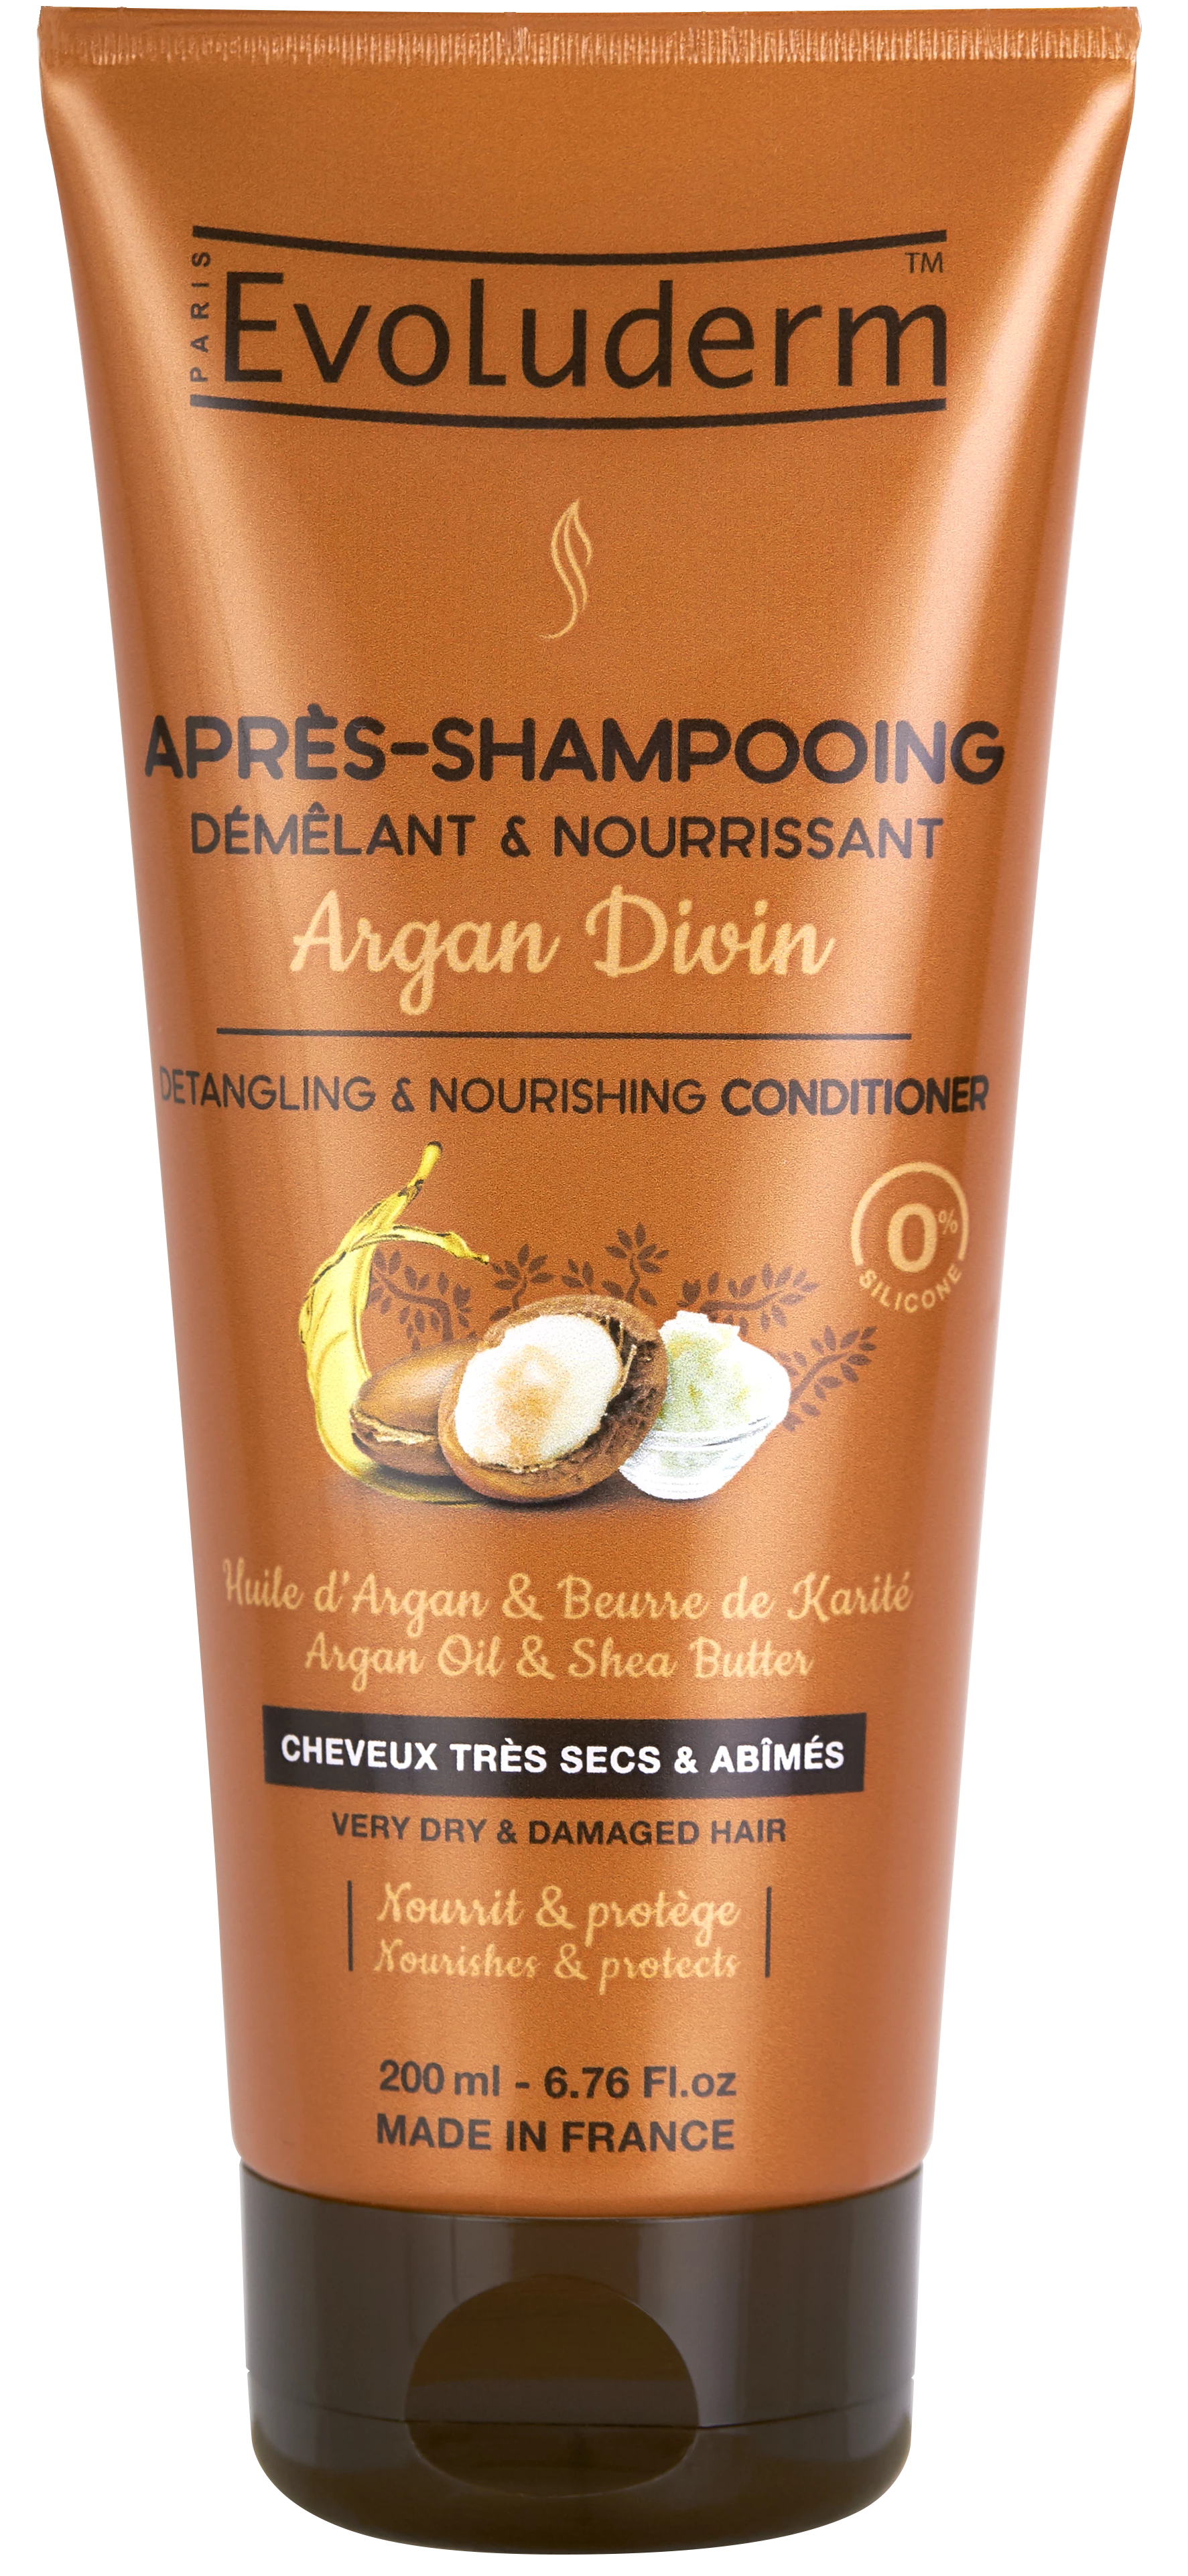 Après-shampooing Argan Divin 200ml - Evoluderm